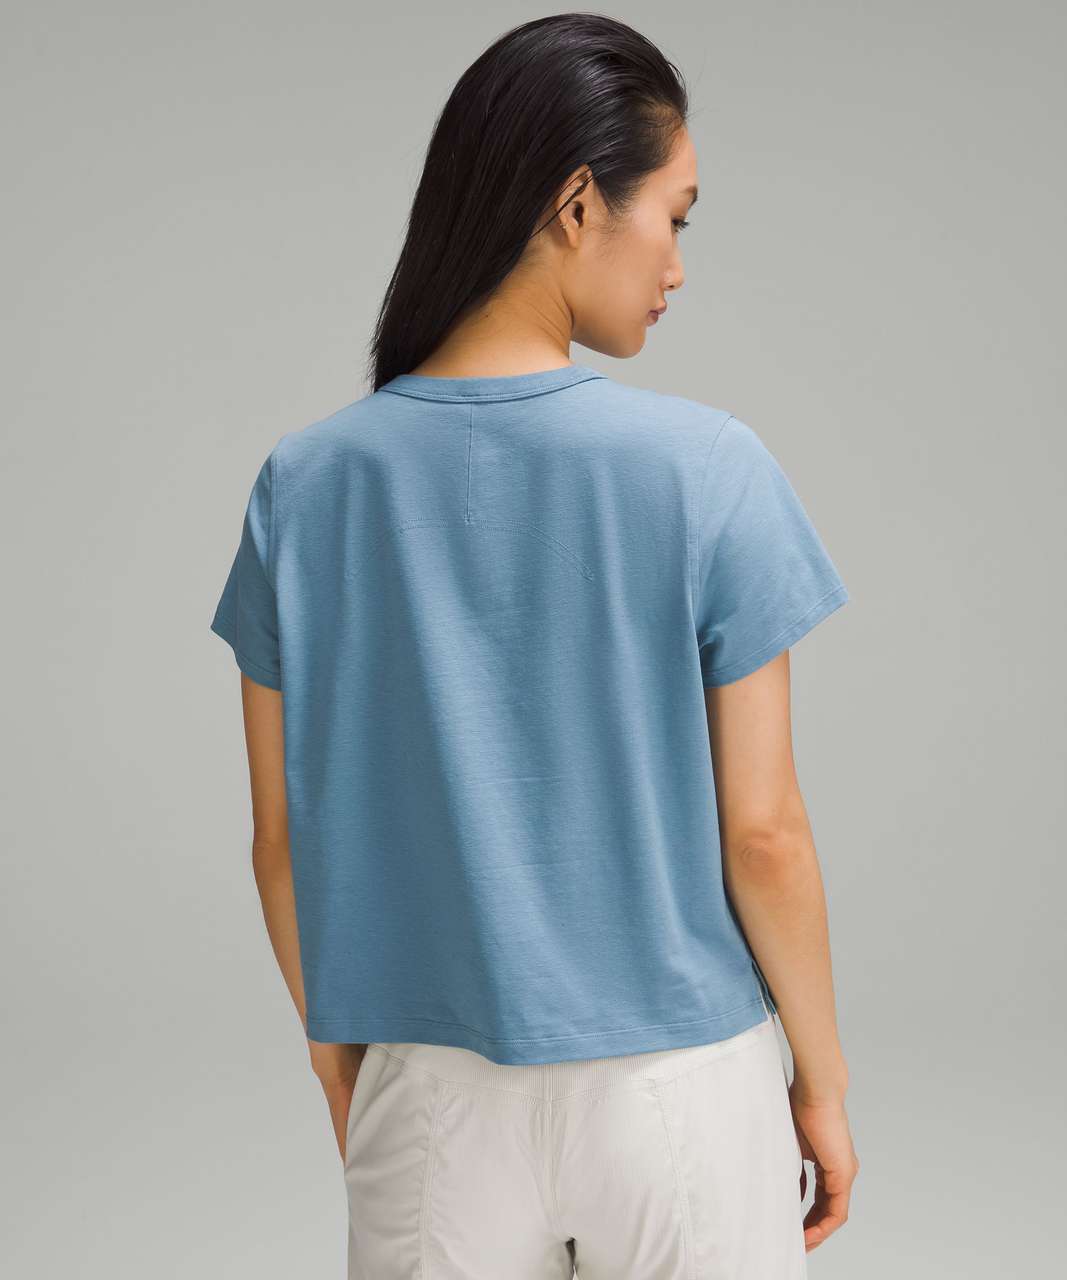 Lululemon Classic-fit Cotton-blend T-shirt - Espresso